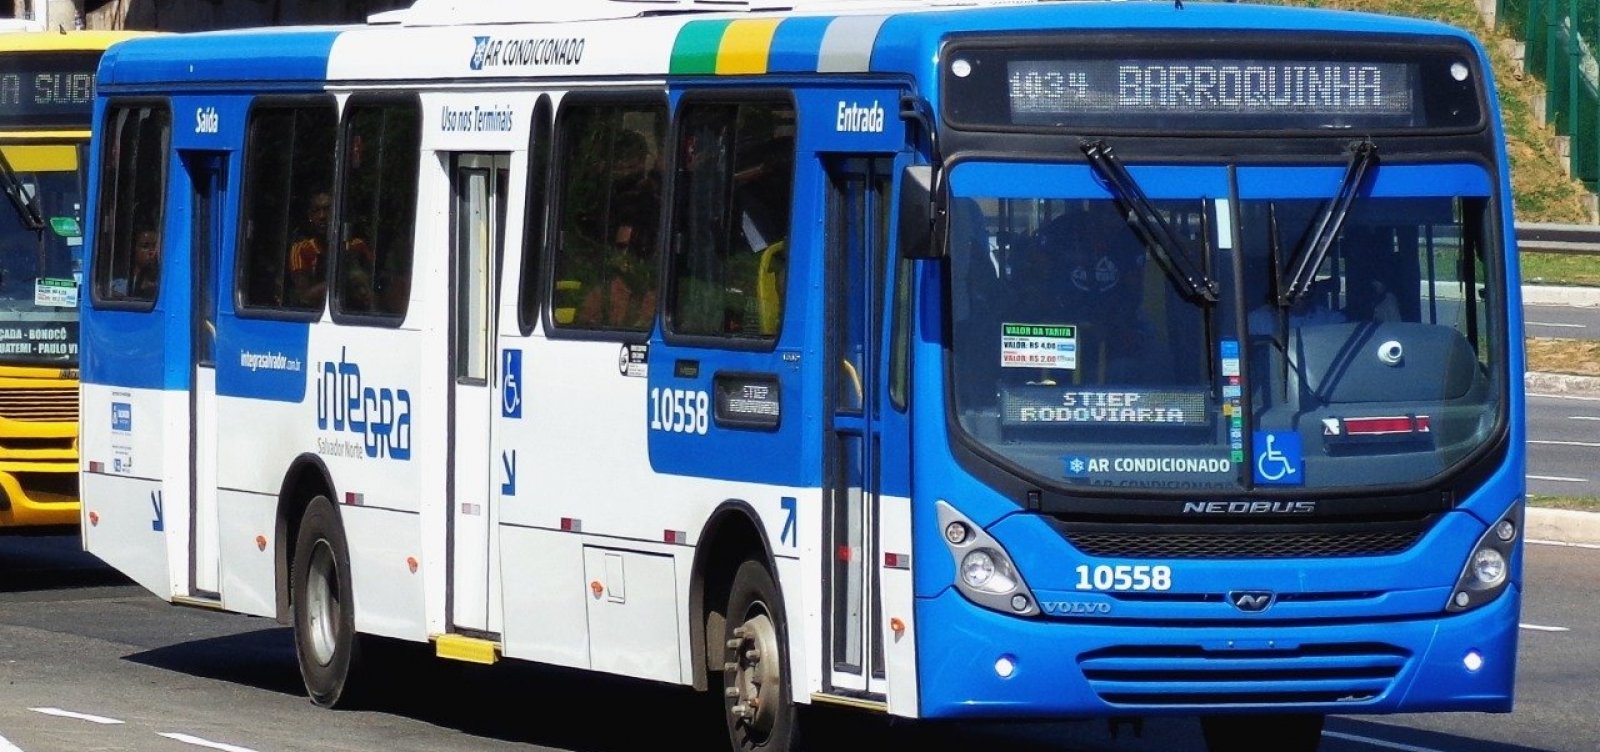 Após pedido da CSN, prefeitura vai intervir em empresa de ônibus, diz vereador